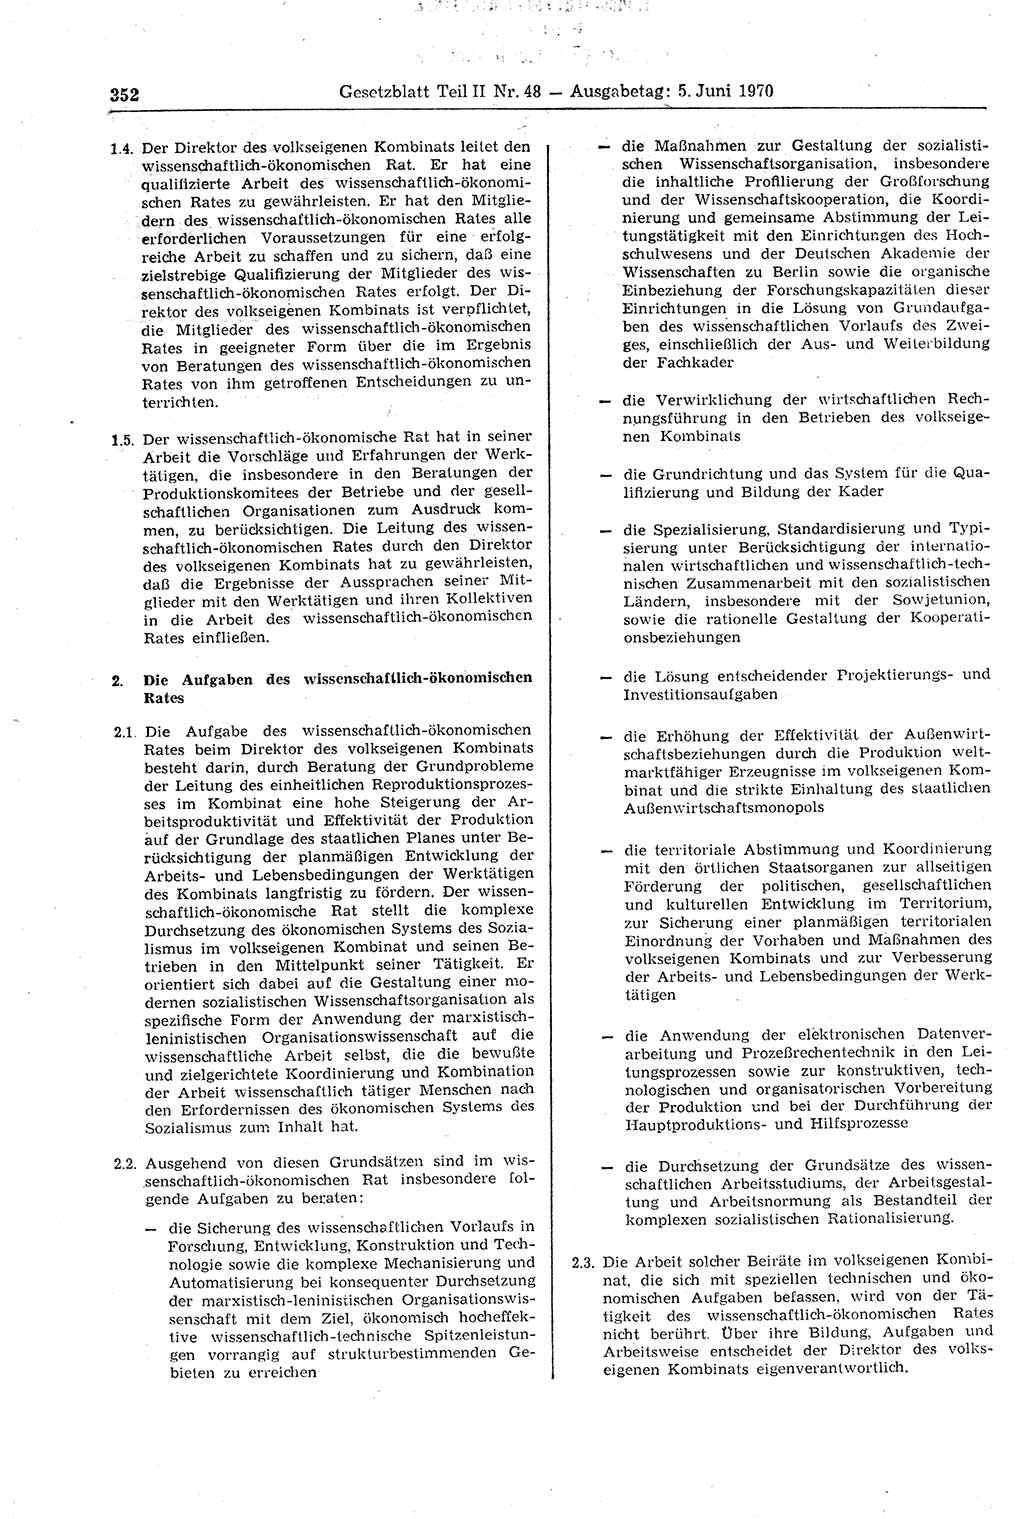 Gesetzblatt (GBl.) der Deutschen Demokratischen Republik (DDR) Teil ⅠⅠ 1970, Seite 352 (GBl. DDR ⅠⅠ 1970, S. 352)